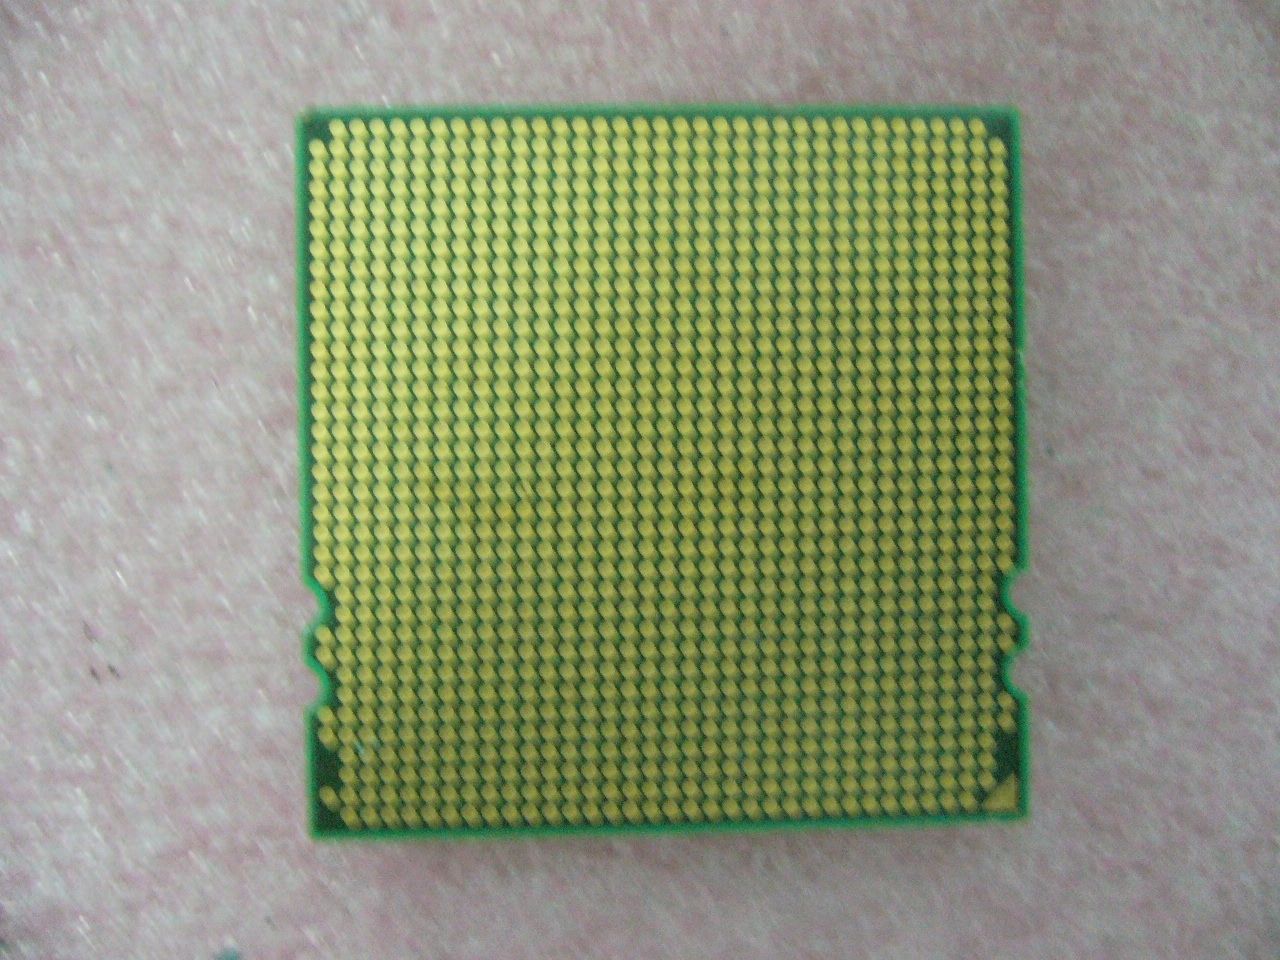 QTY 1x AMD OSA2220GAA6CX Opteron 2220 2.8 GHz Dual Core CPU Socket F 1207 - zum Schließen ins Bild klicken